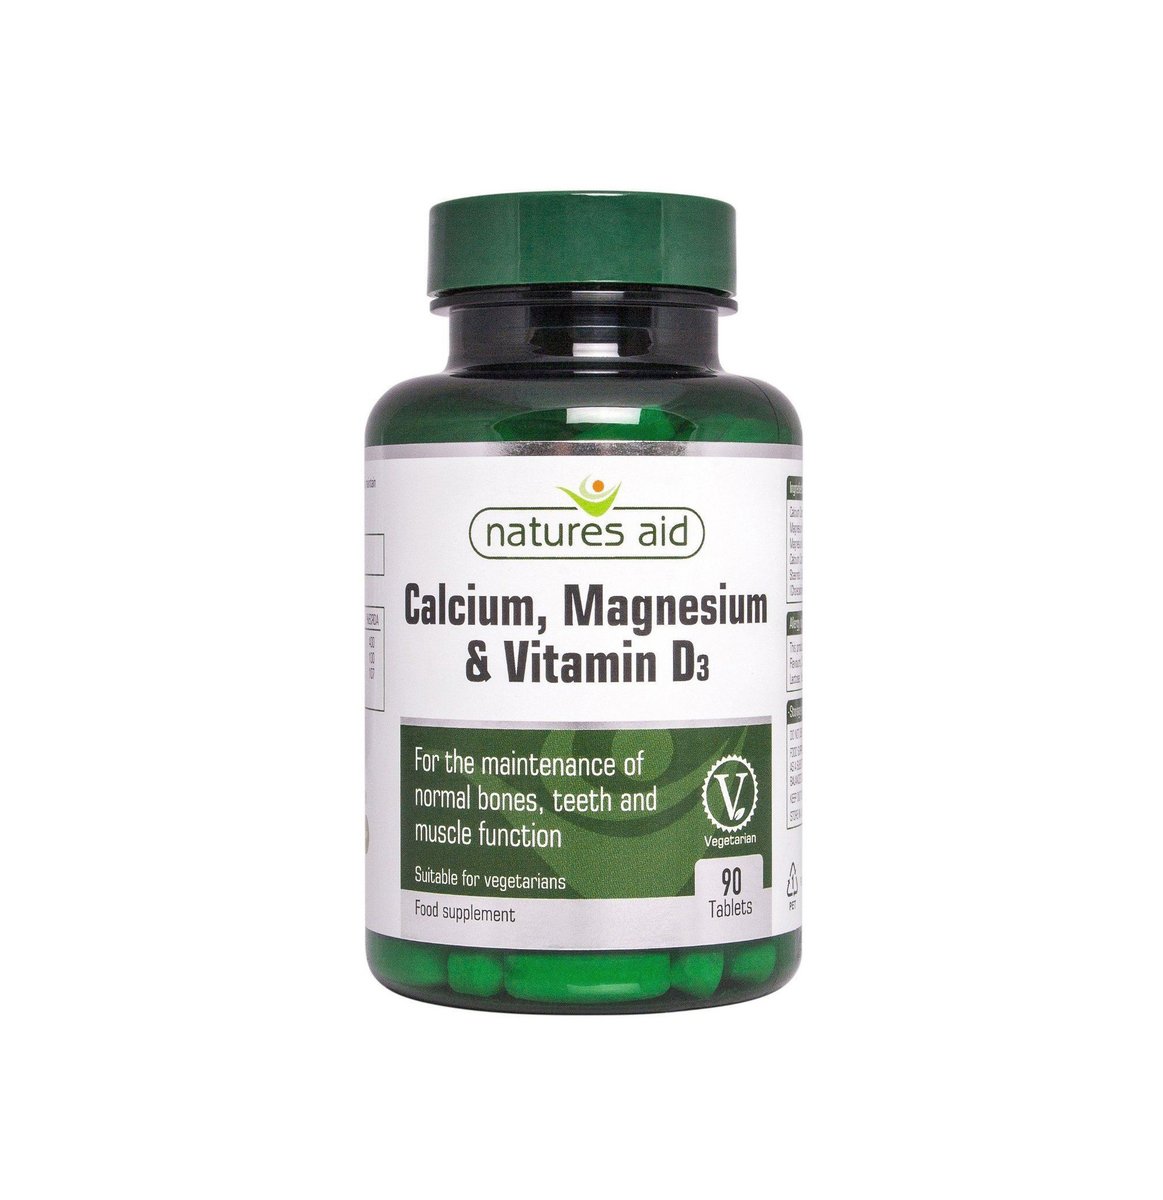 Natures Aid Calcium, Magnesium & Vitamin D3 Food Supplement 90 Tablets